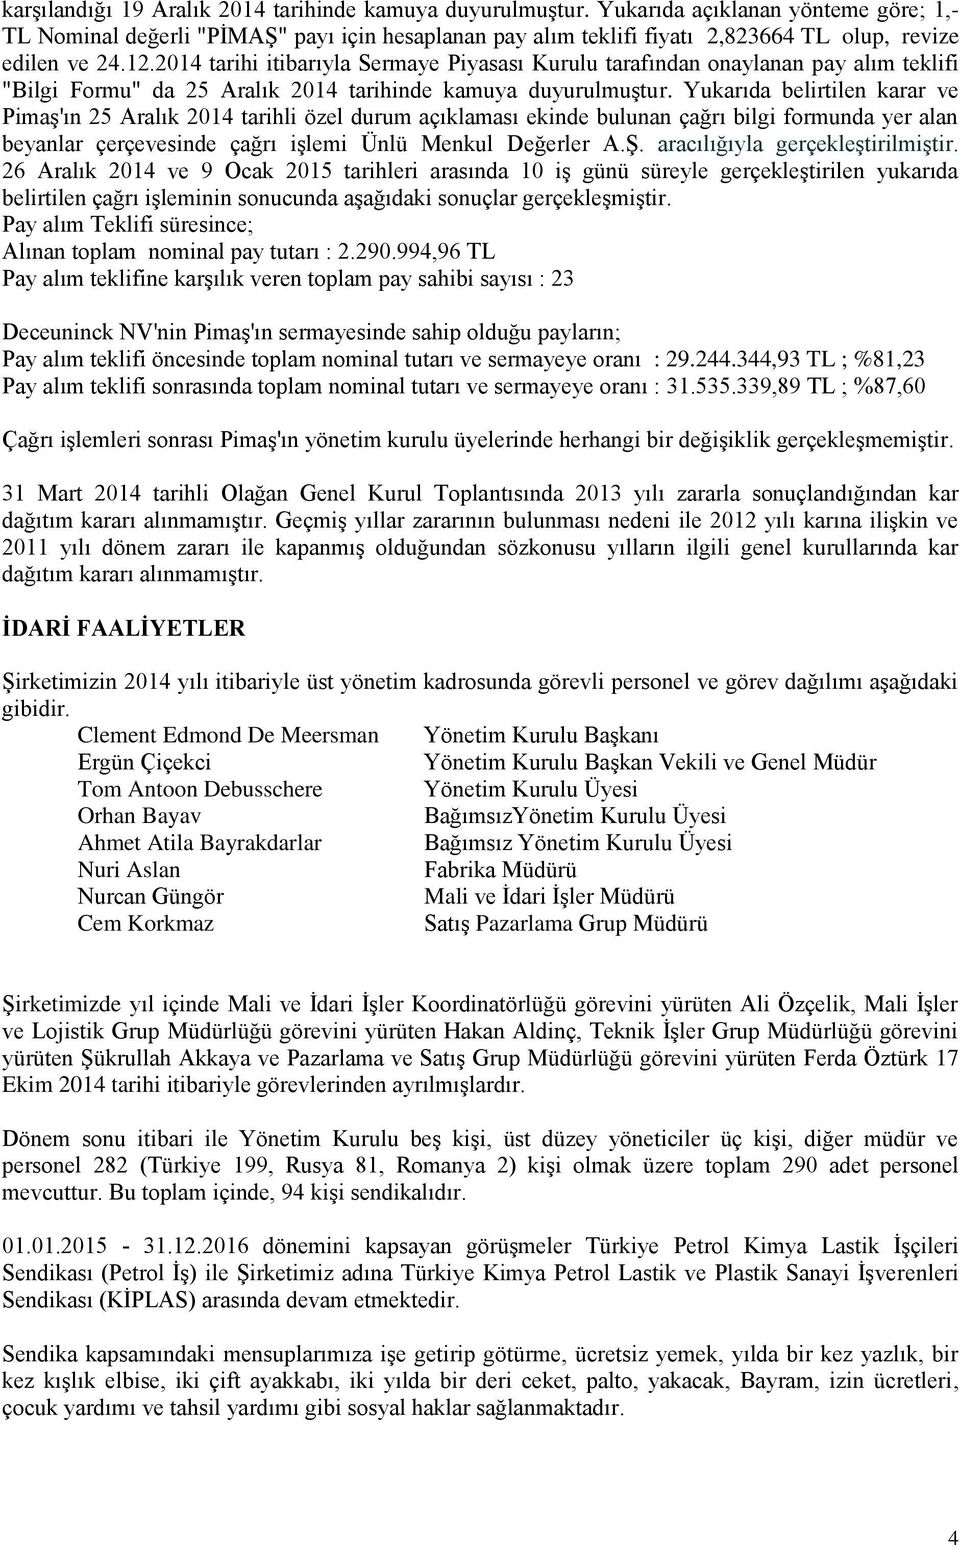 2014 tarihi itibarıyla Sermaye Piyasası Kurulu tarafından onaylanan pay alım teklifi "Bilgi Formu" da 25 Aralık 2014 tarihinde kamuya duyurulmuştur.